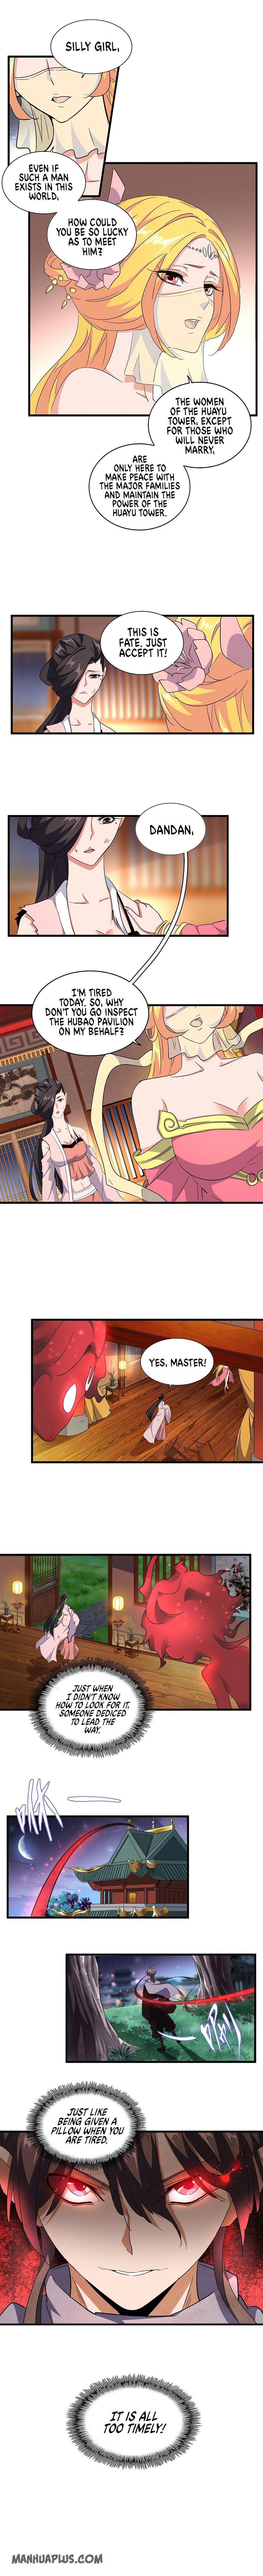 Magic Emperor Chapter 132 page 3 - Mangakakalot